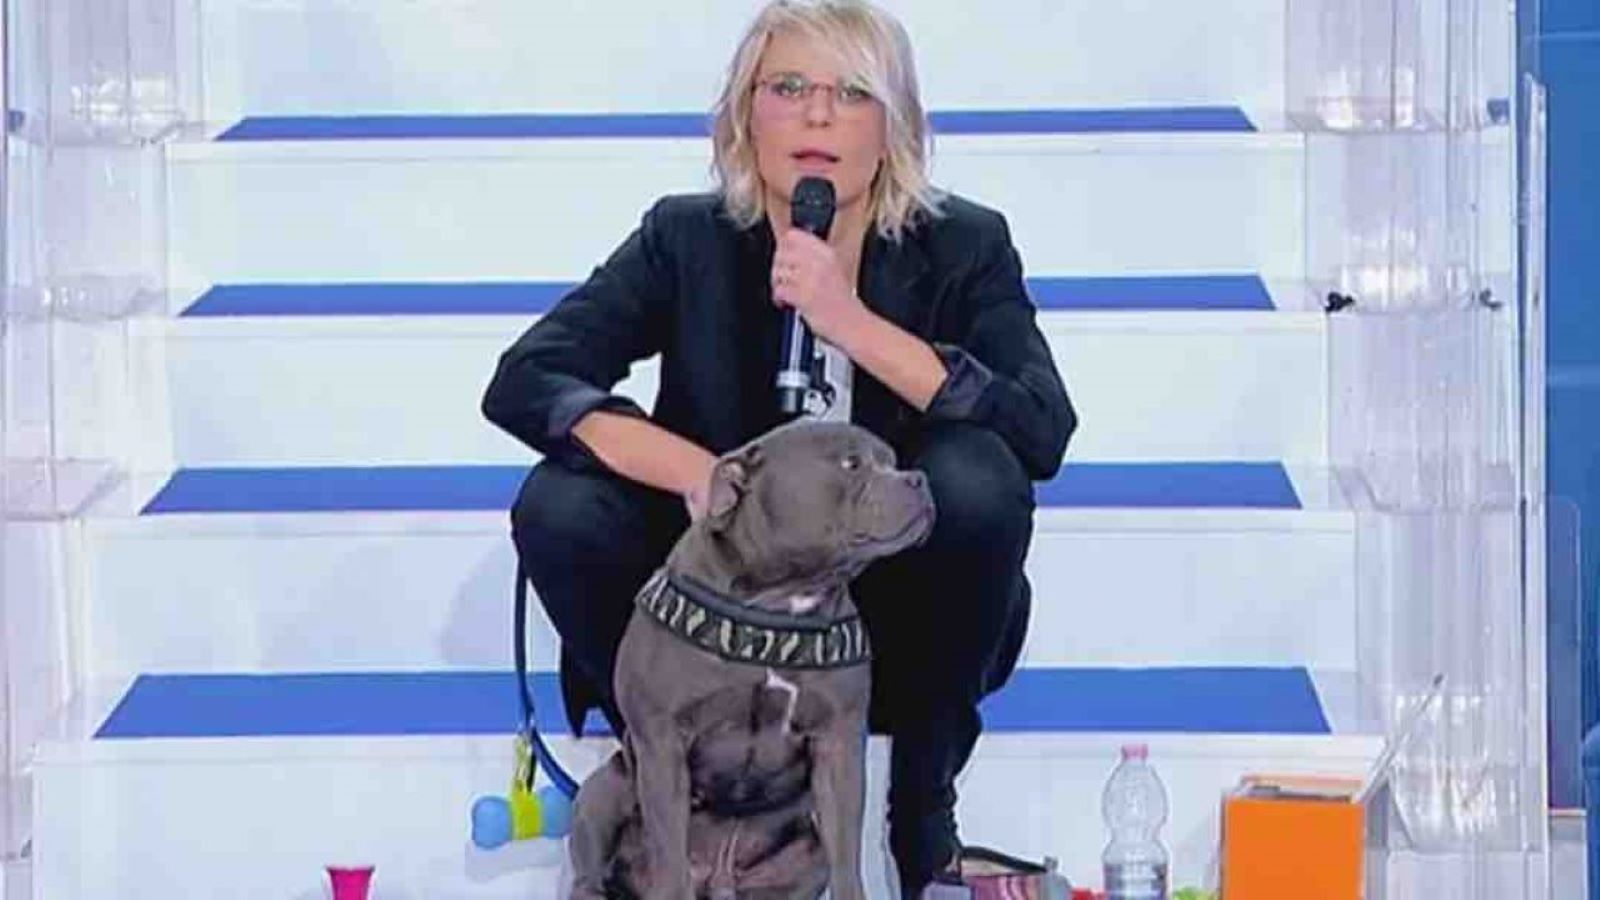 Uomini e Donne cambia: Maria De Filippi chiude le puntate con lo spot a favore delle adozioni dei cani (VIDEO)